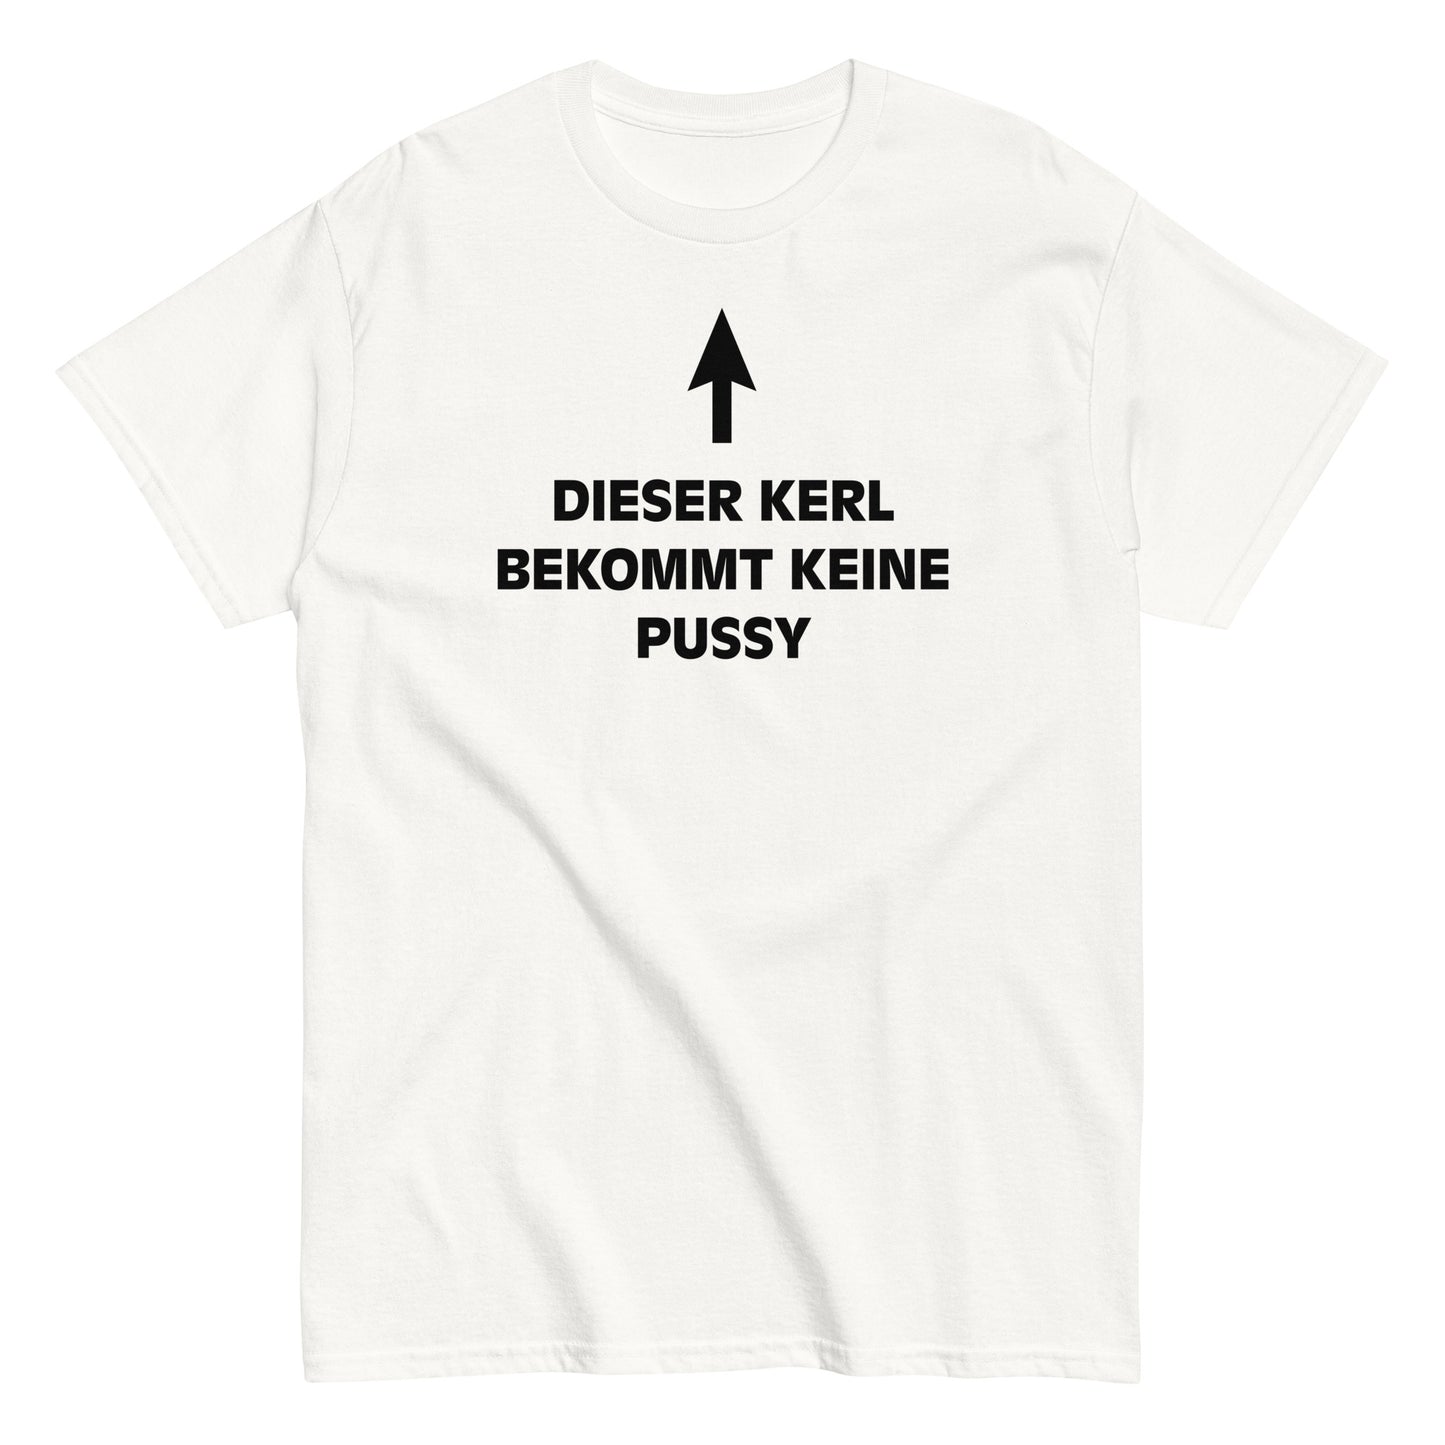 DIESER KERL BEKOMMT KEINE PUSSY T-Shirt